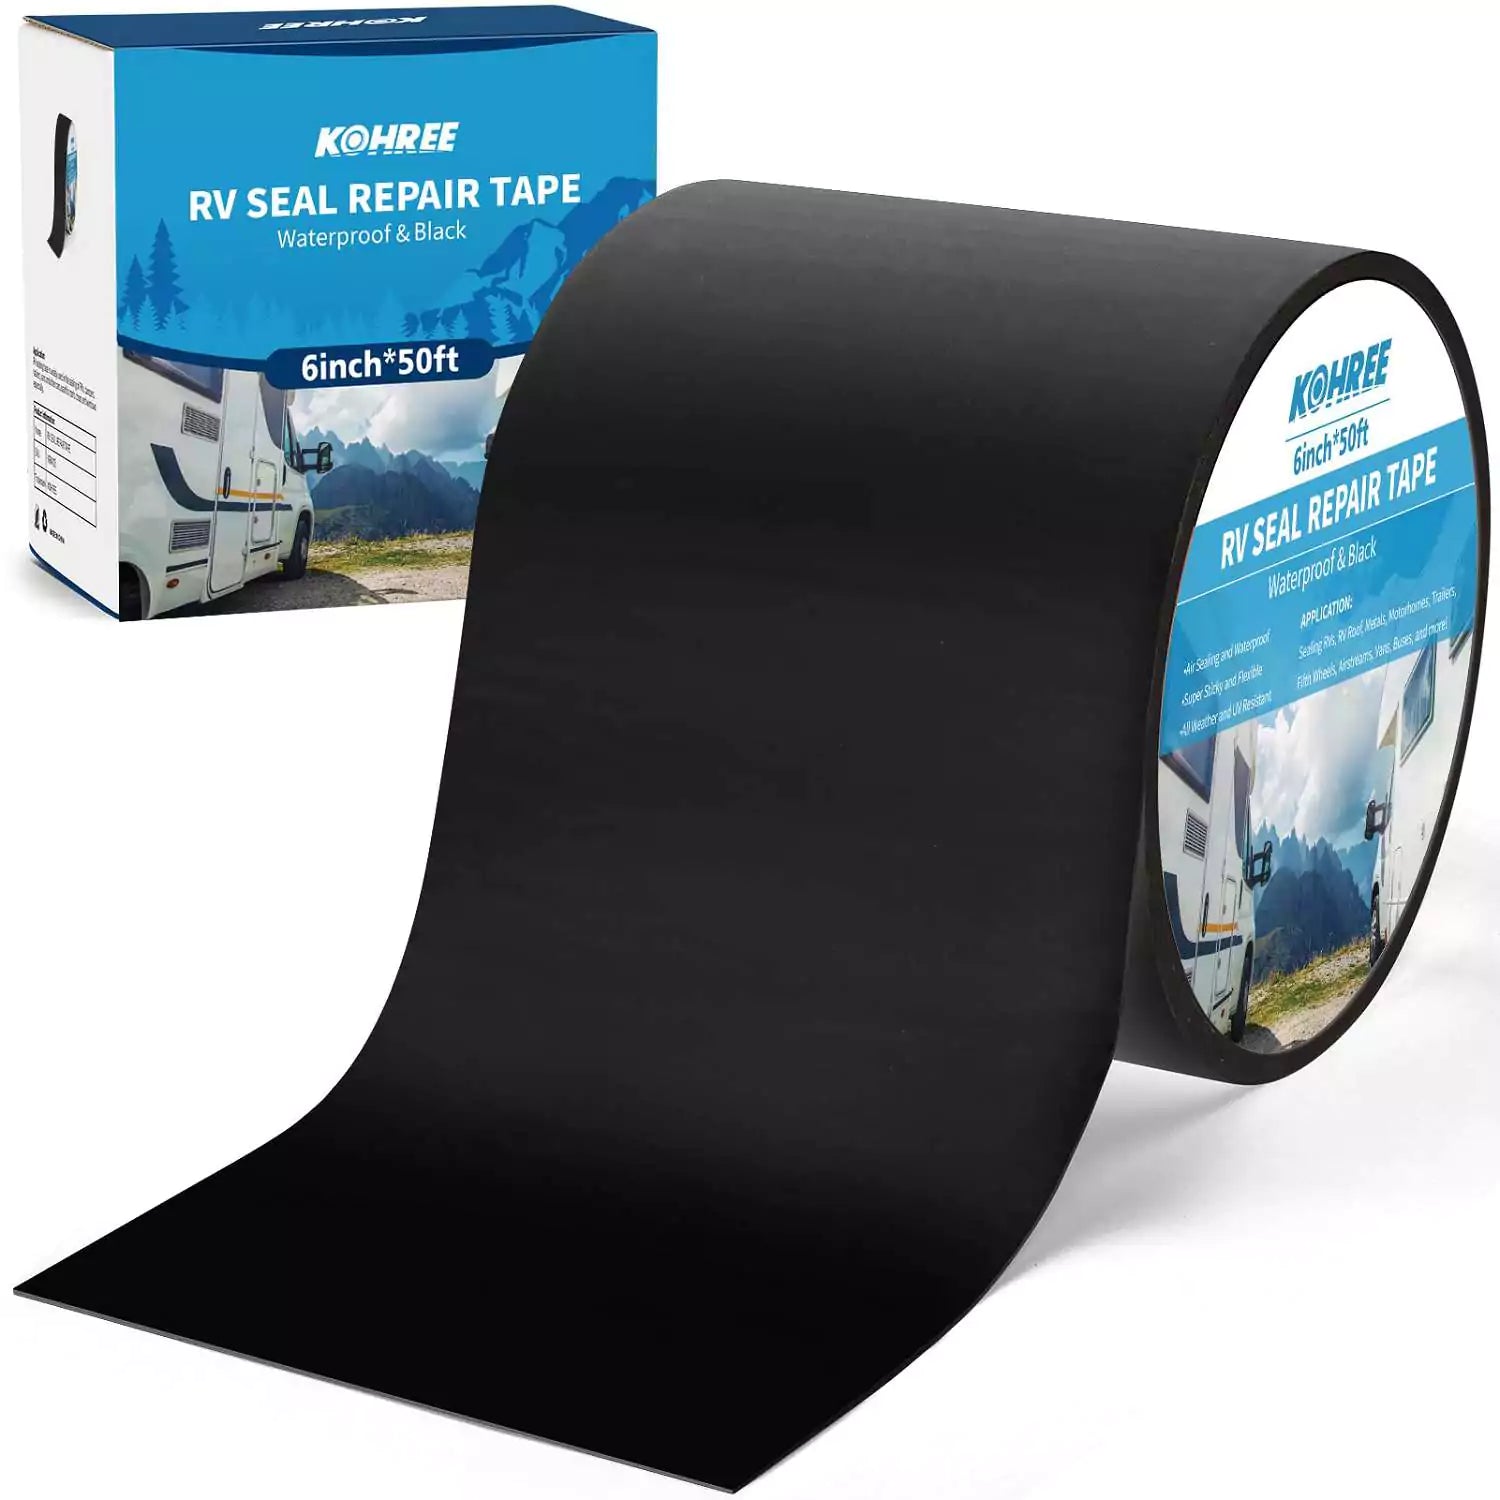 Kohree black butyl sealant tape 6 in 50 ft